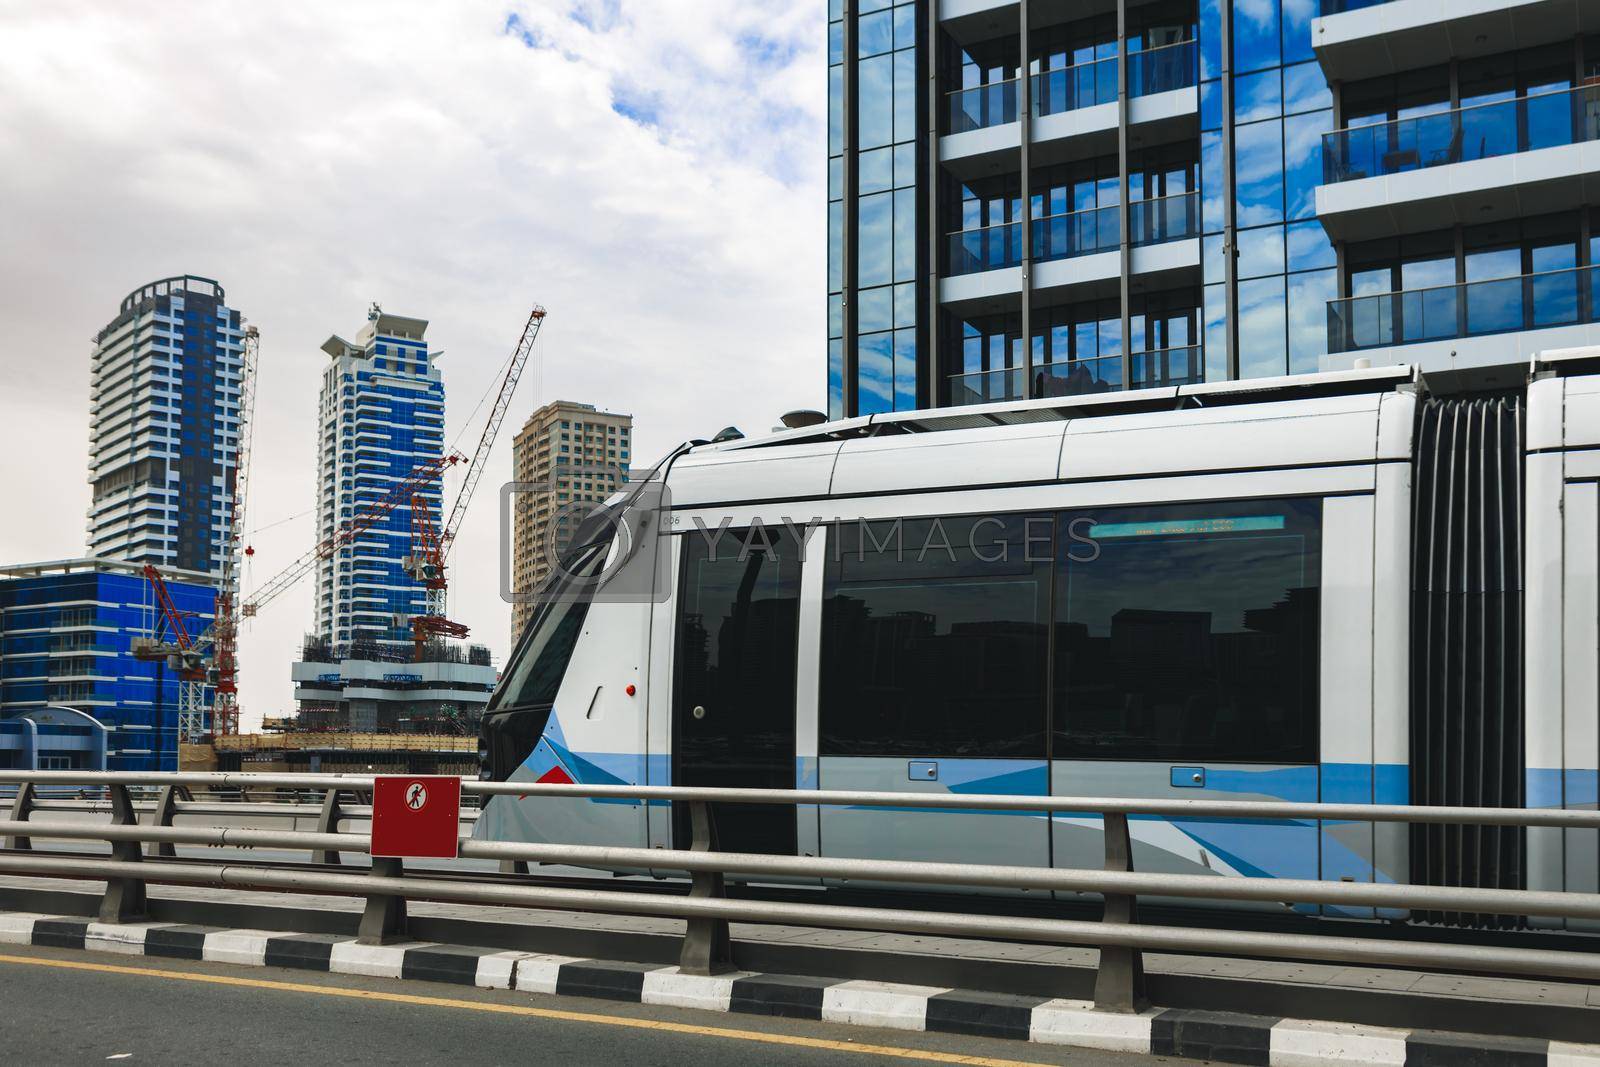 Dubai Tram public transport in a street, close up